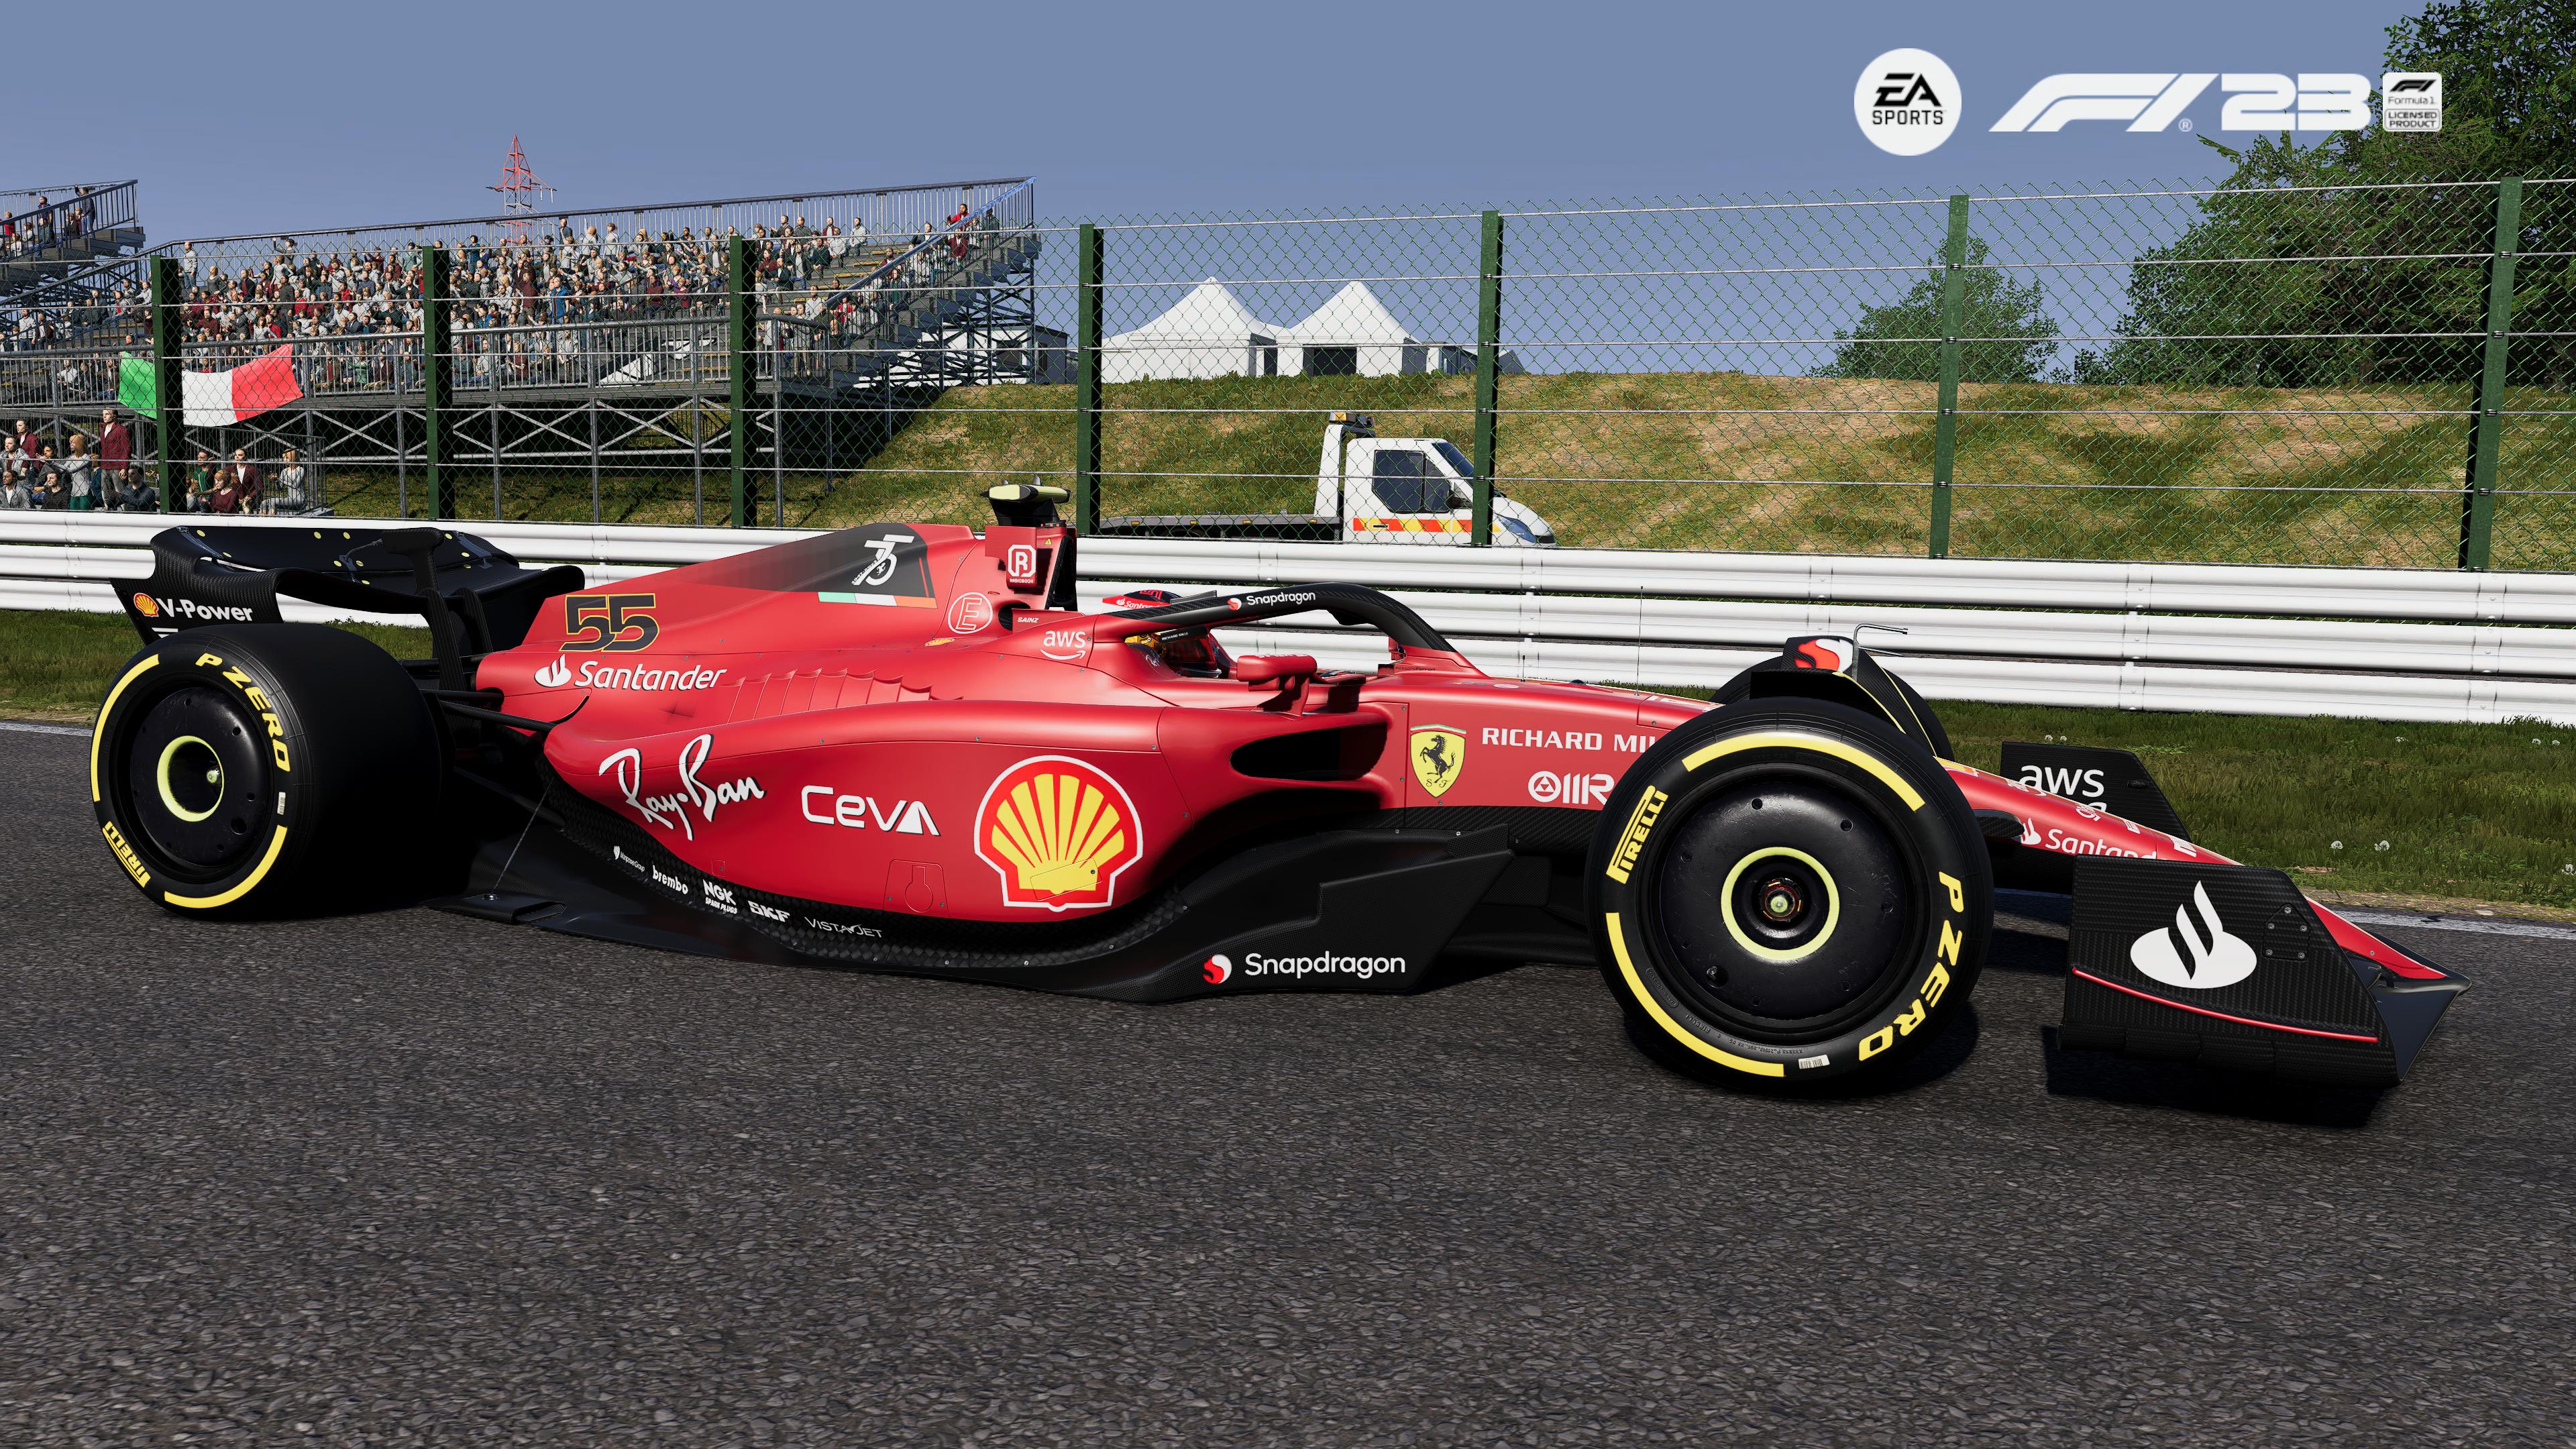 Reseña: EA Sports F1 23, el mejor juego de Fórmula 1 que han hecho 13